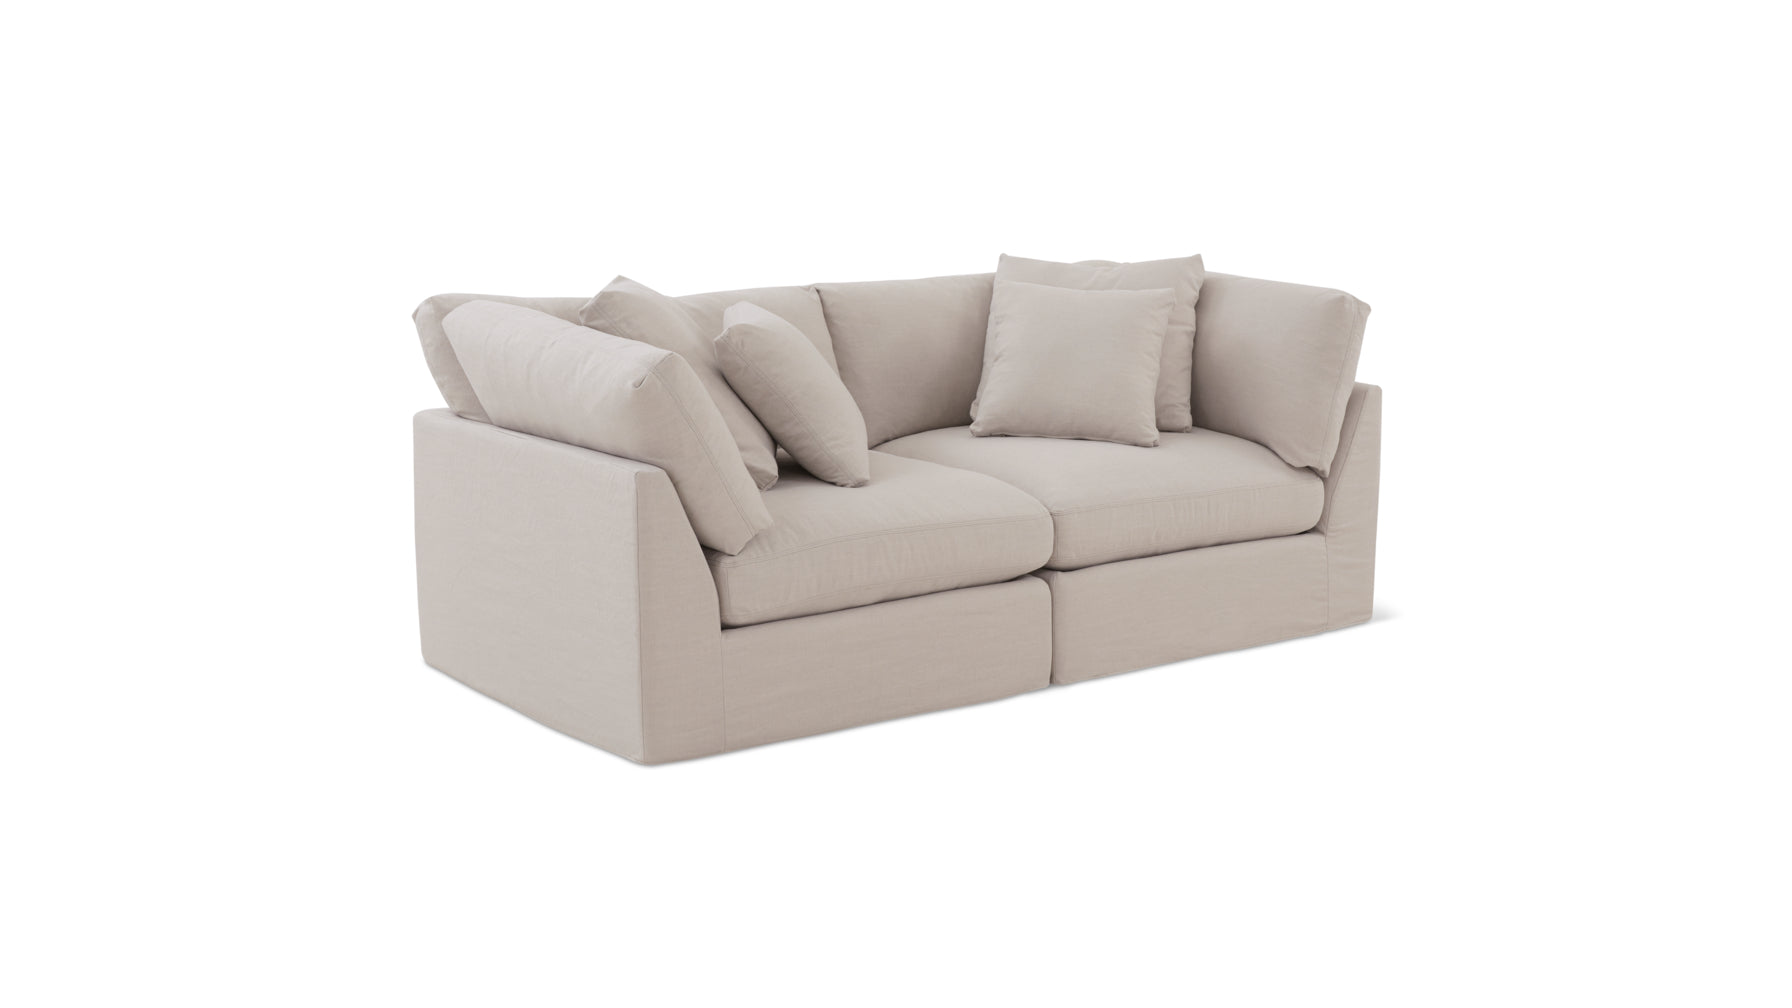 Get Together™ 2 Piece Modular Sofa, Large, Clay - Image 3